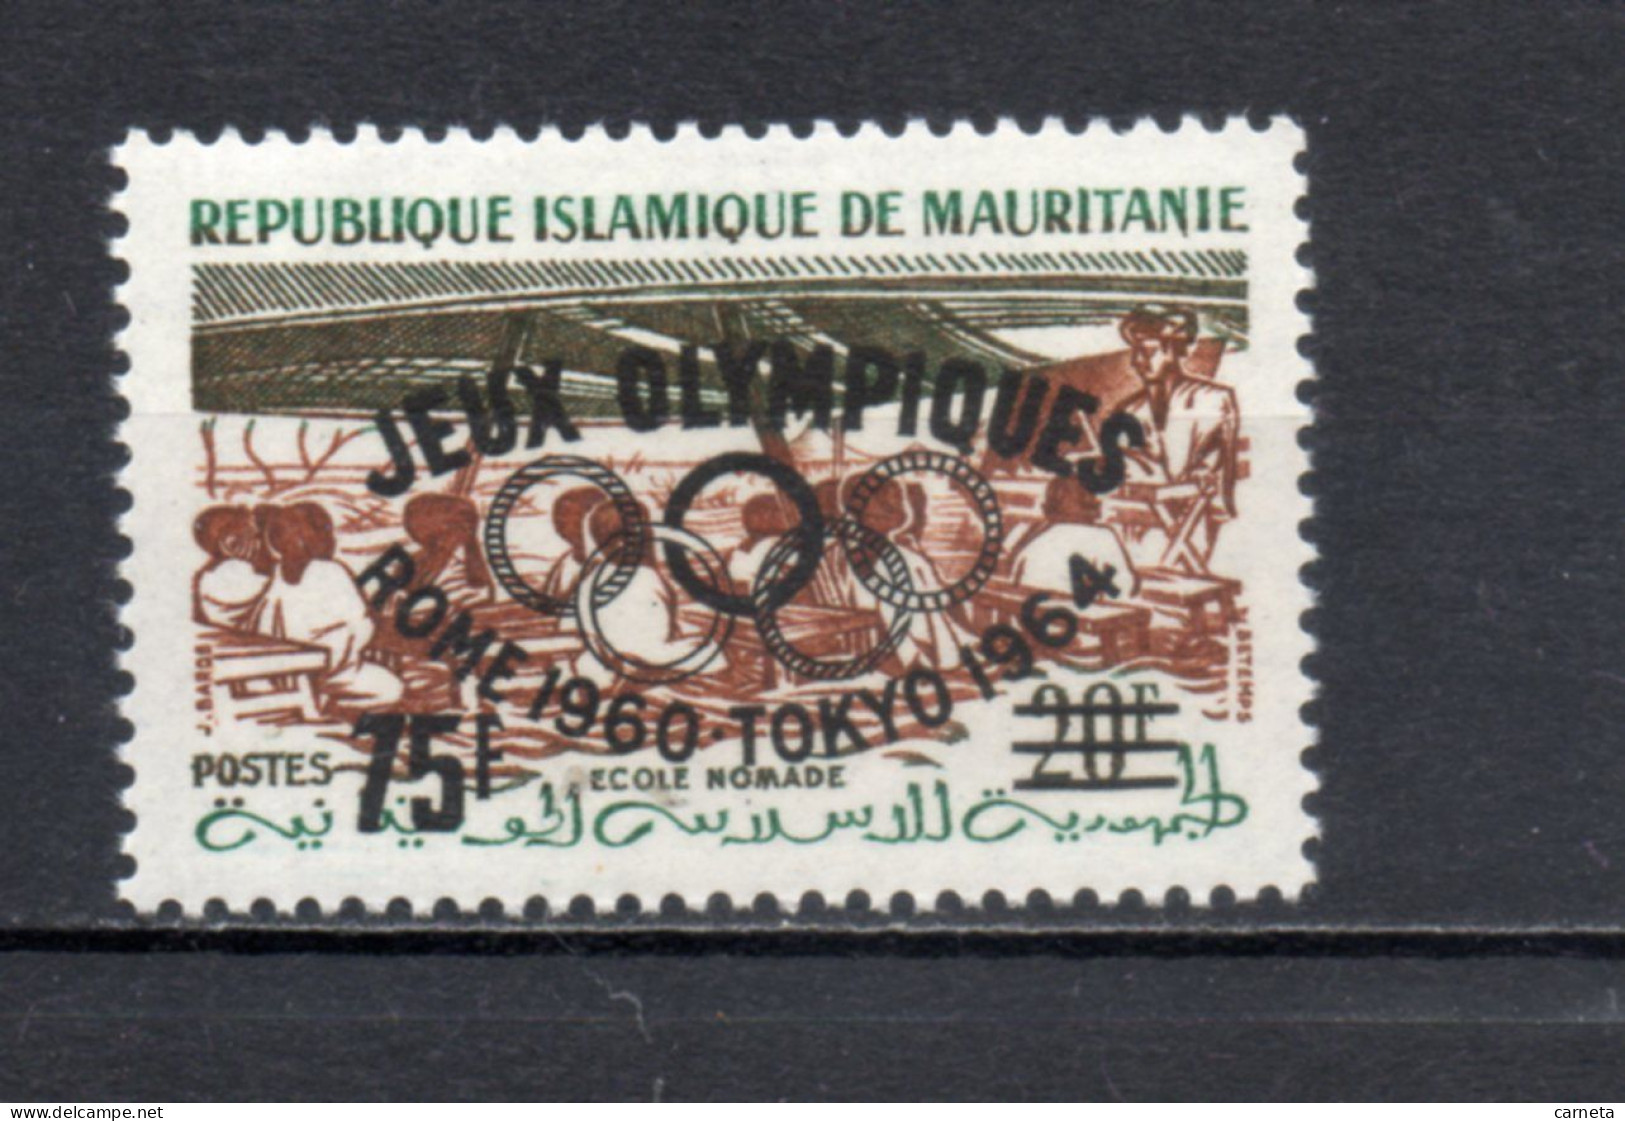 MAURITANIE  N° 154D   NEUF SANS CHARNIERE   COTE 10.50€    ECOLE NOMADE JEUX OLYMPIQUES TOKYO - Mauritanië (1960-...)